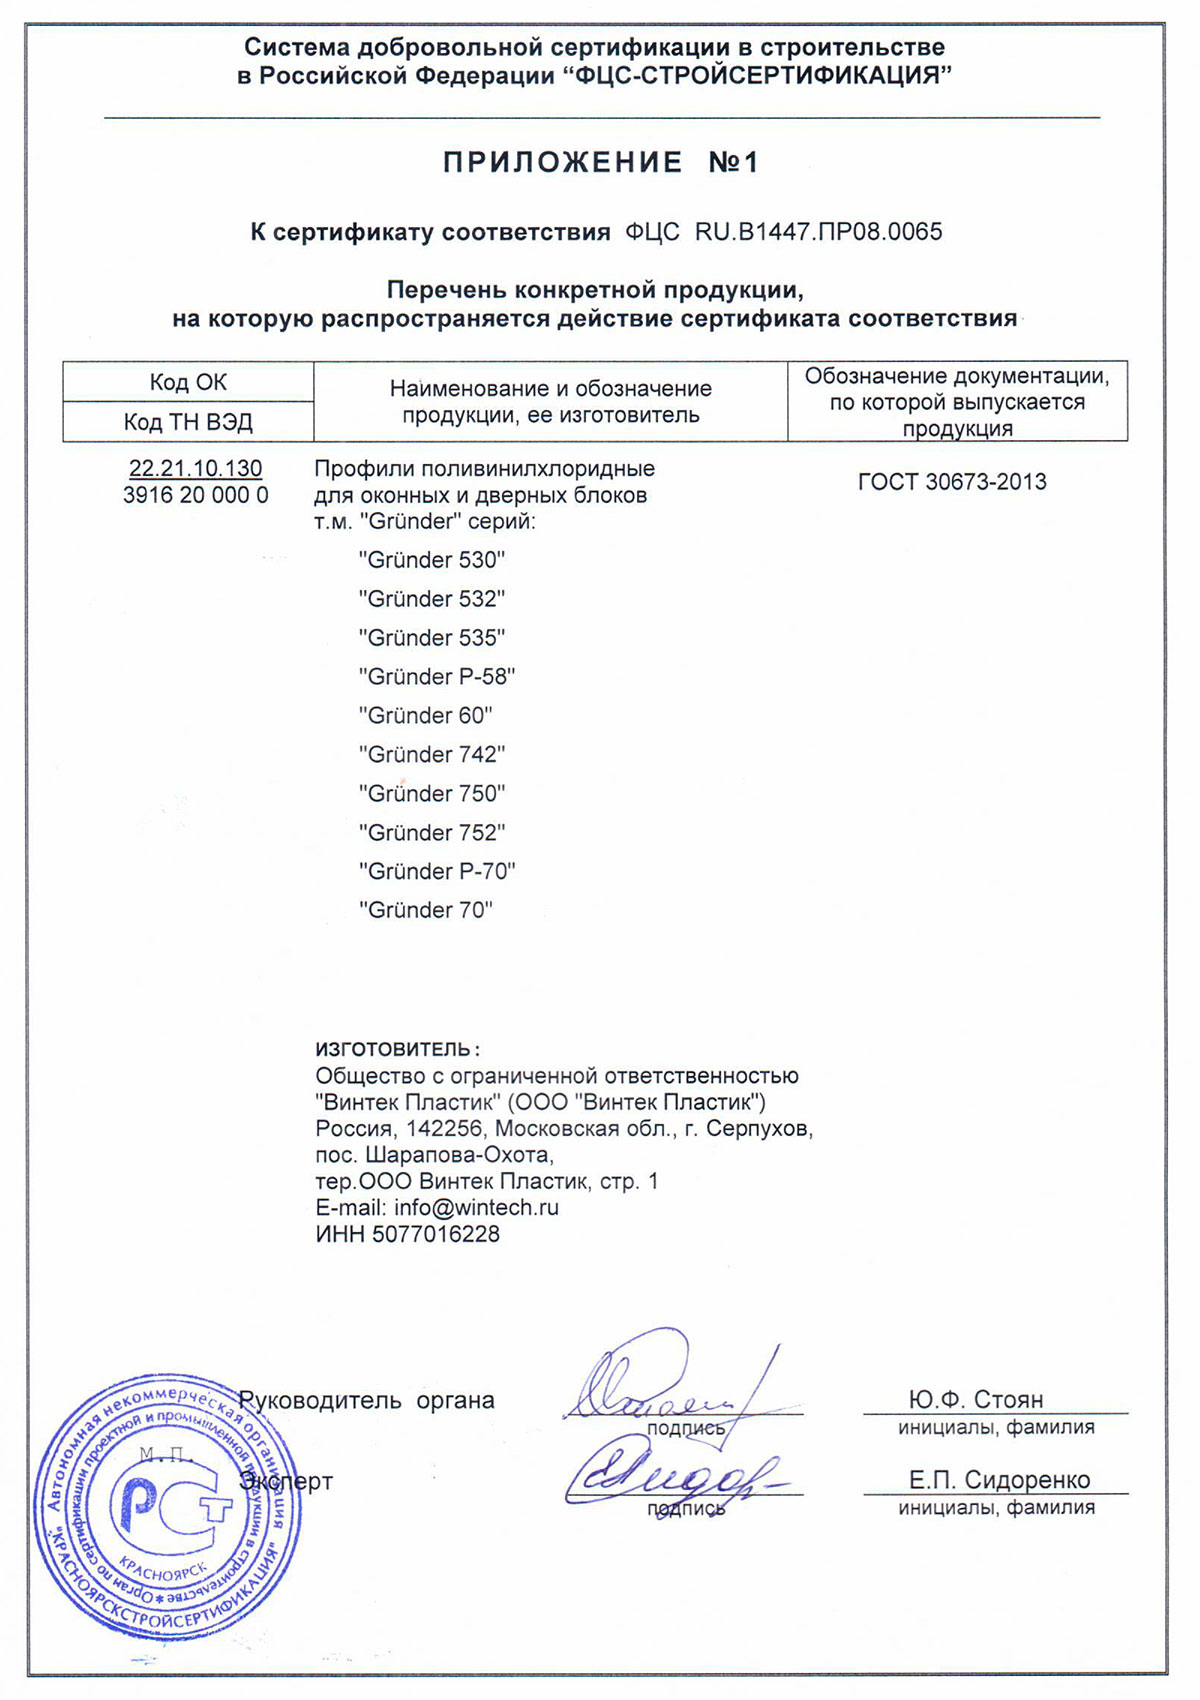 Grunder, приложение к сертификату соответствия, 18.12.2025